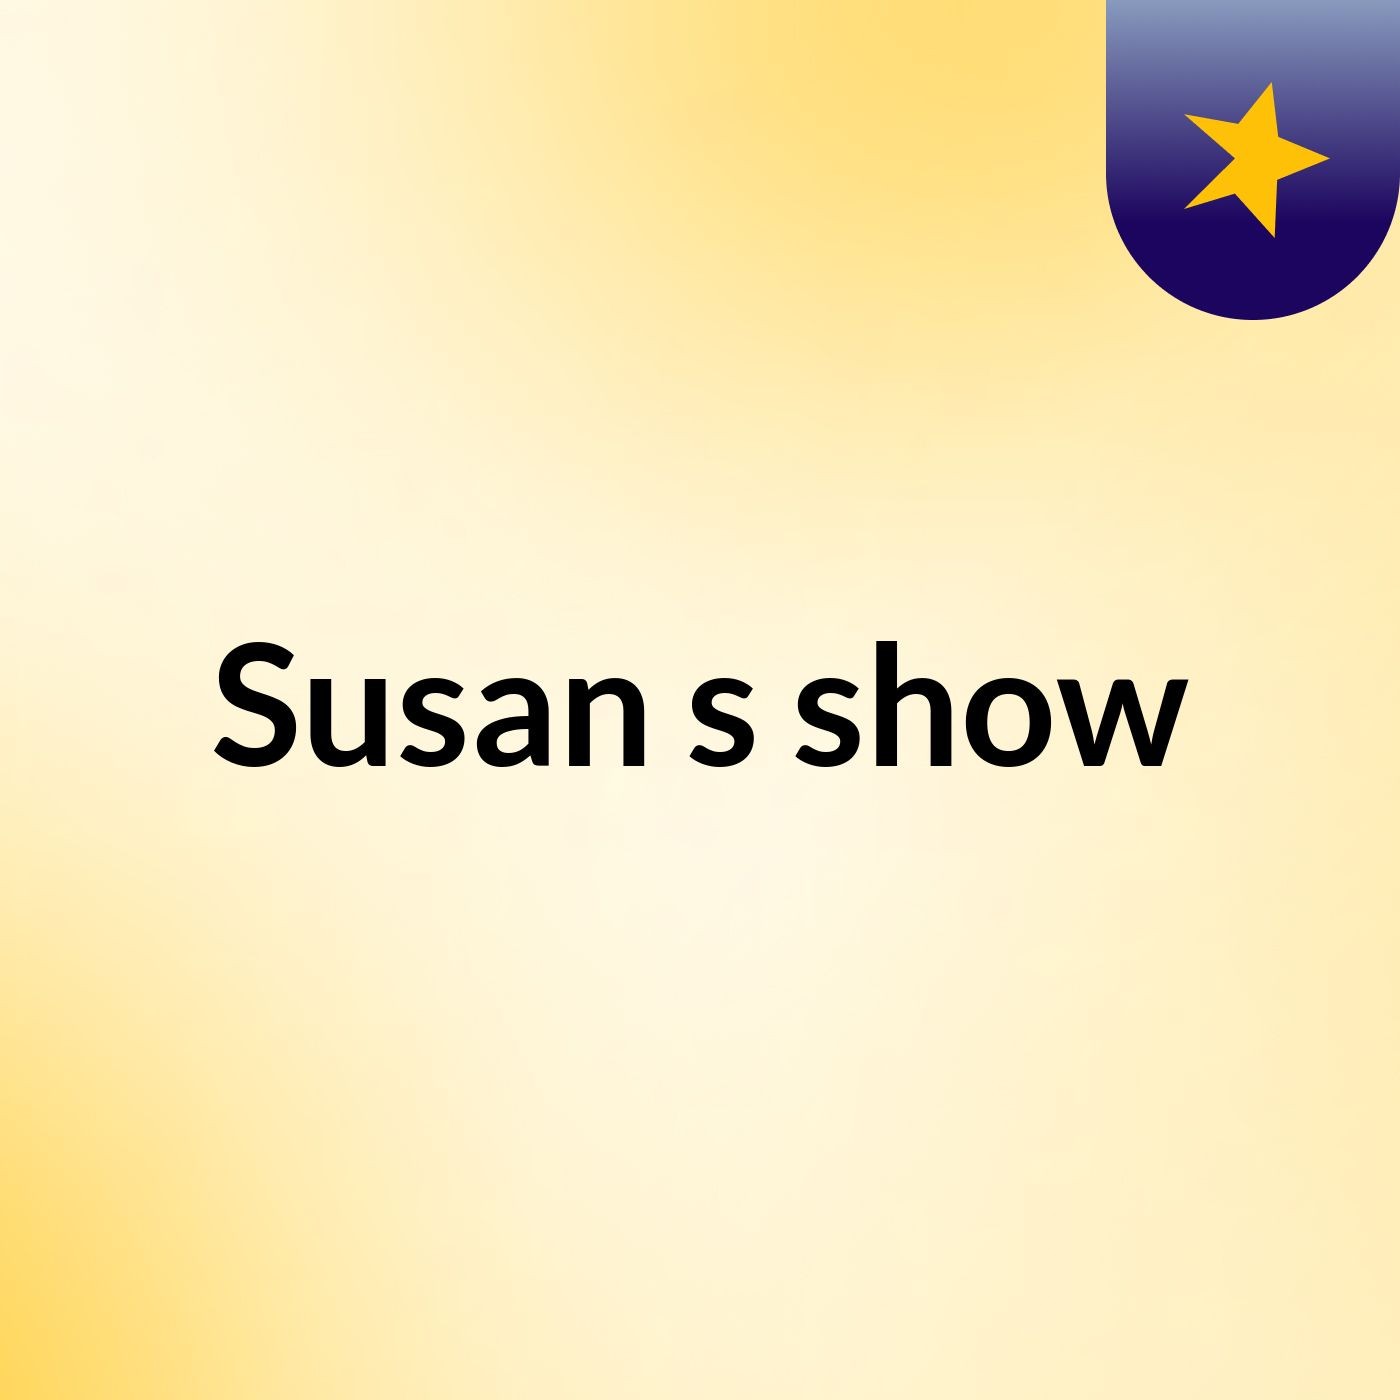 Susan's show